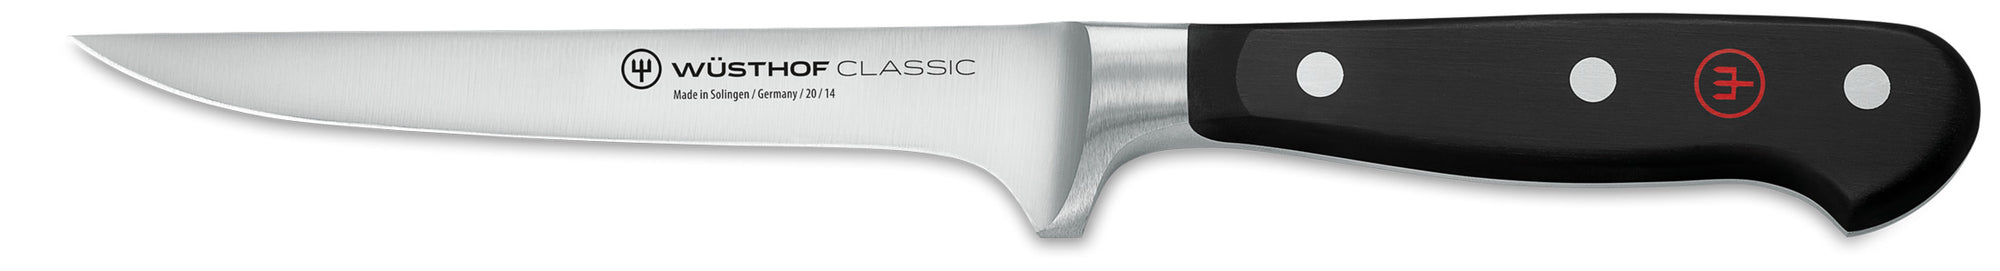 Wusthof 4603 Classic Flexible Boning Knife Canada